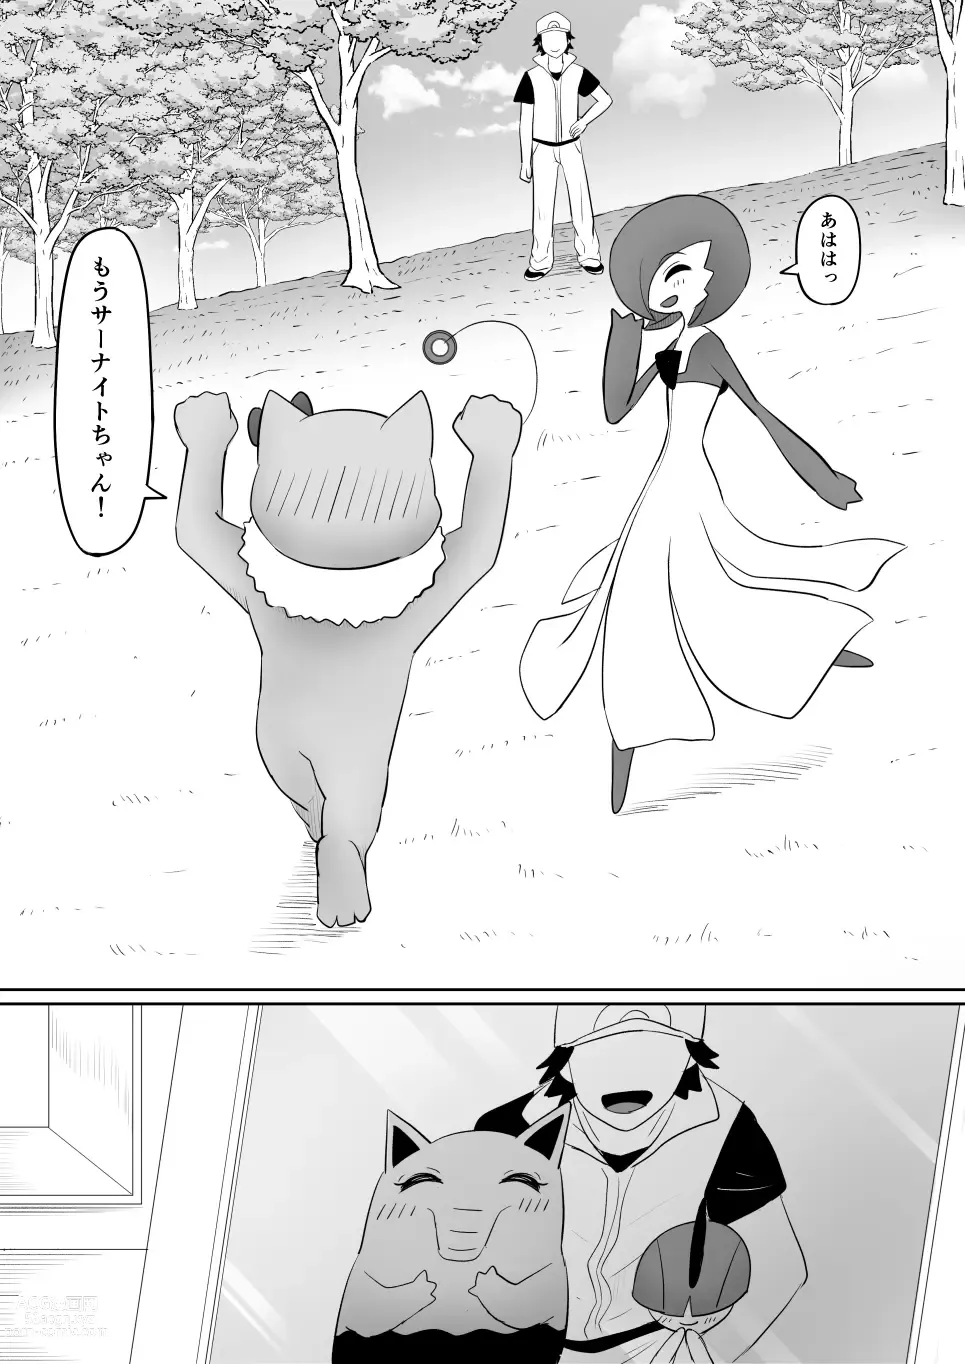 Page 39 of doujinshi Koi o Shita Sleeper-chan.